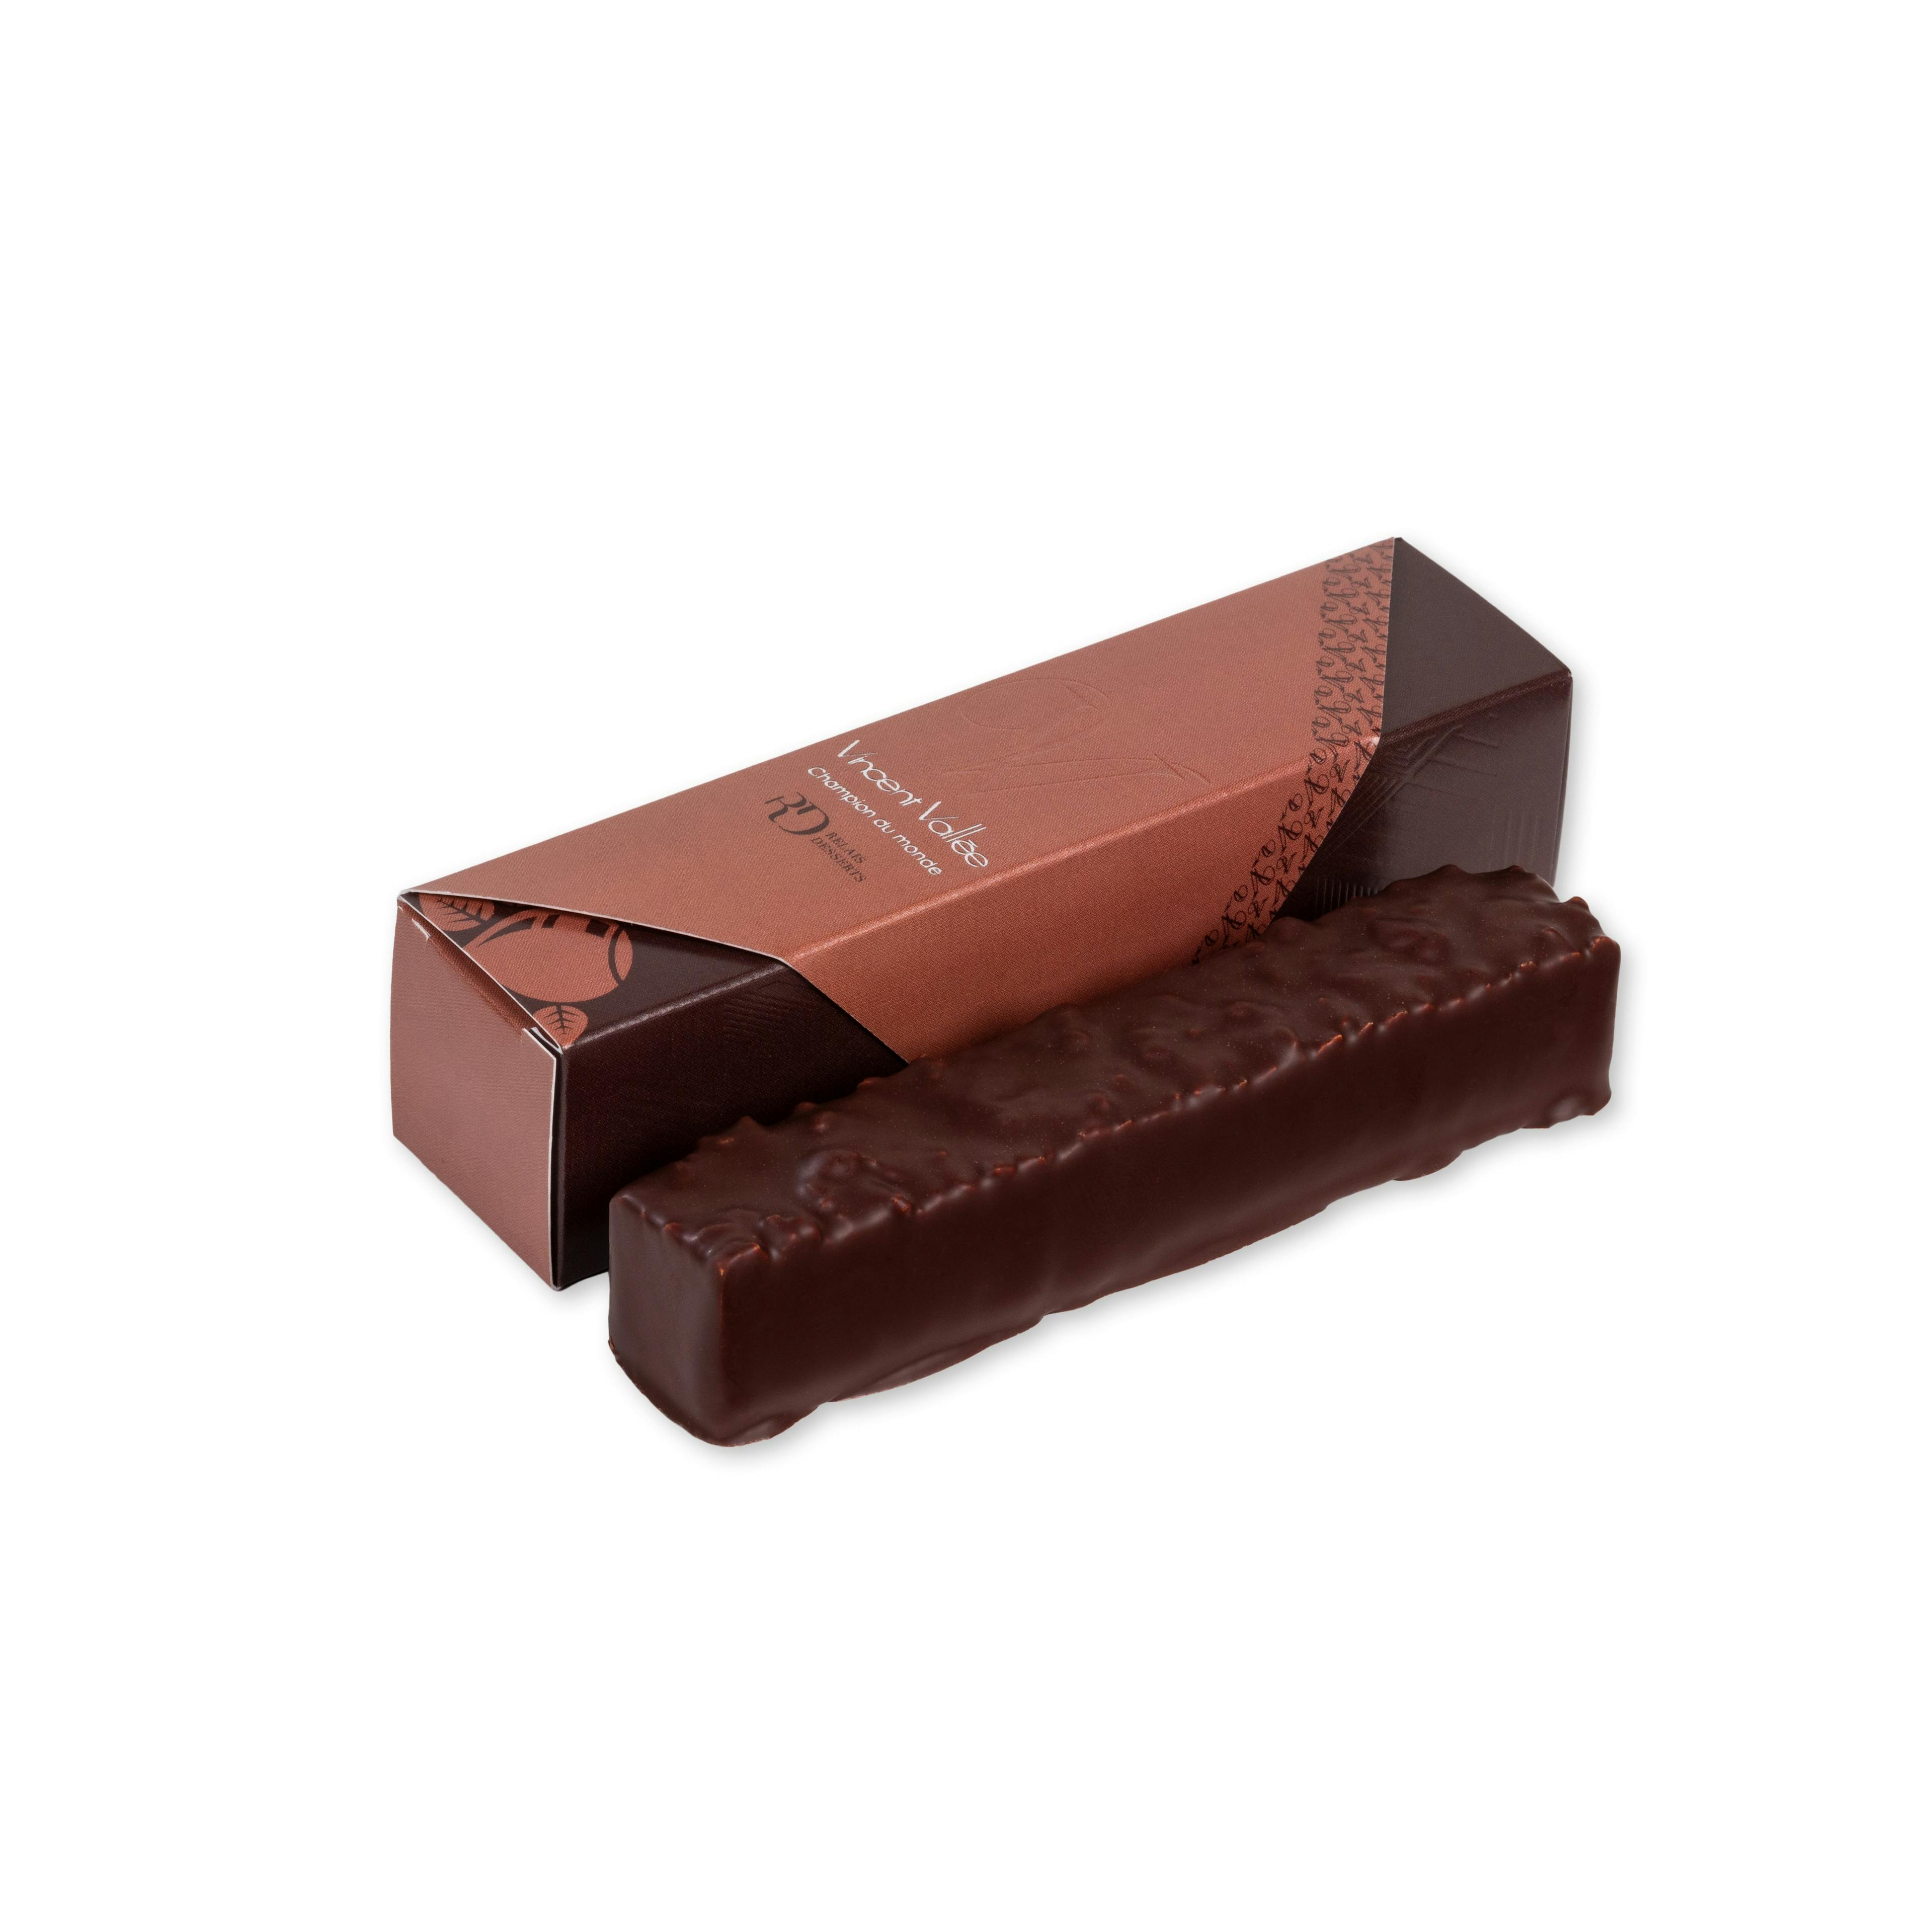 Noisette - Vincent Vallée world champion chocolatier